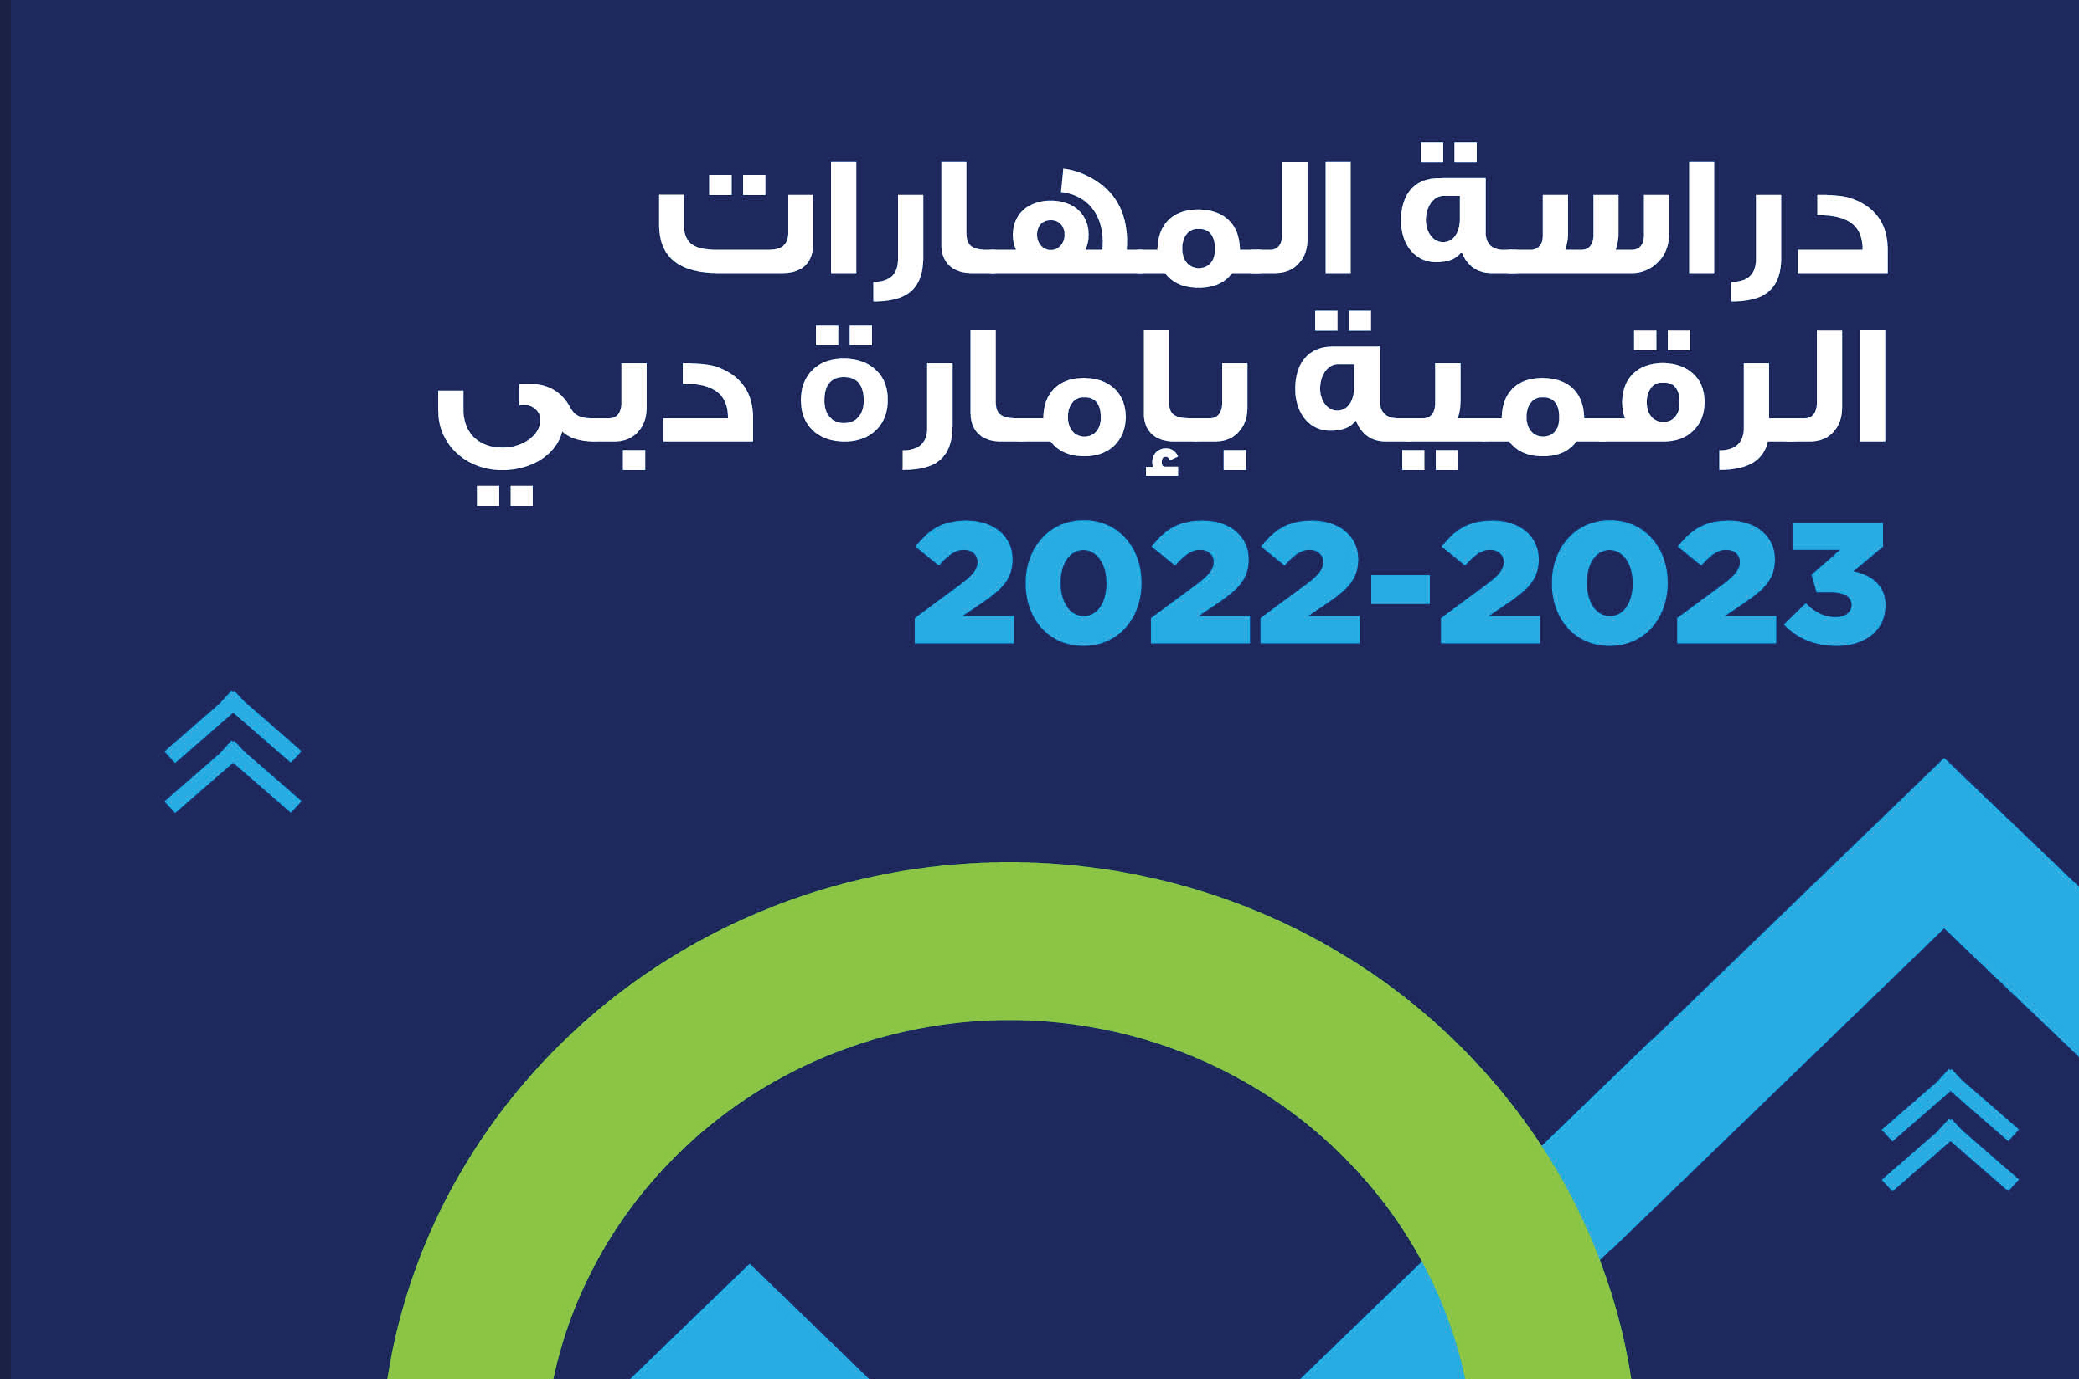 دراسة المهارات الرقمية بإمارة دبي 2022-2023